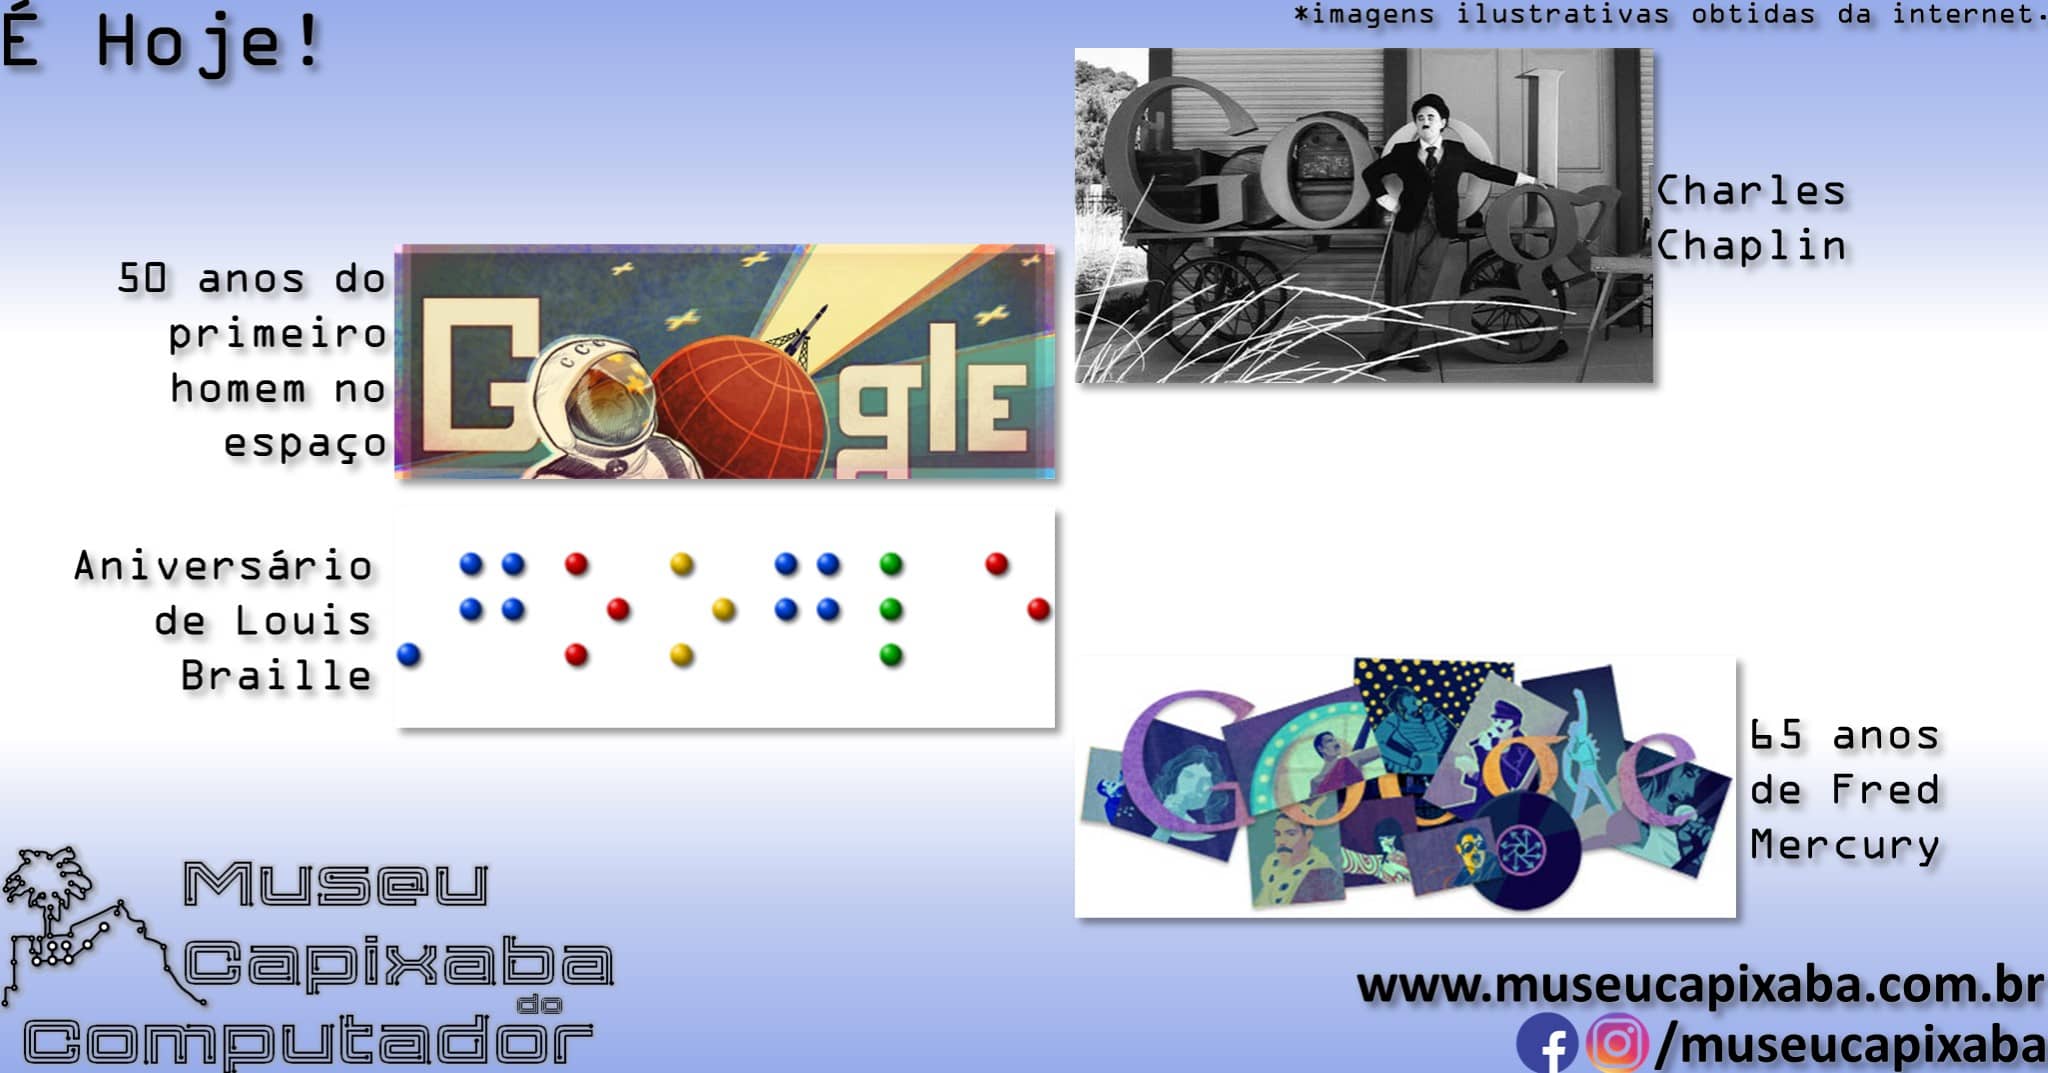 Google lança seu primeiro Doodle multiplayer, temático de